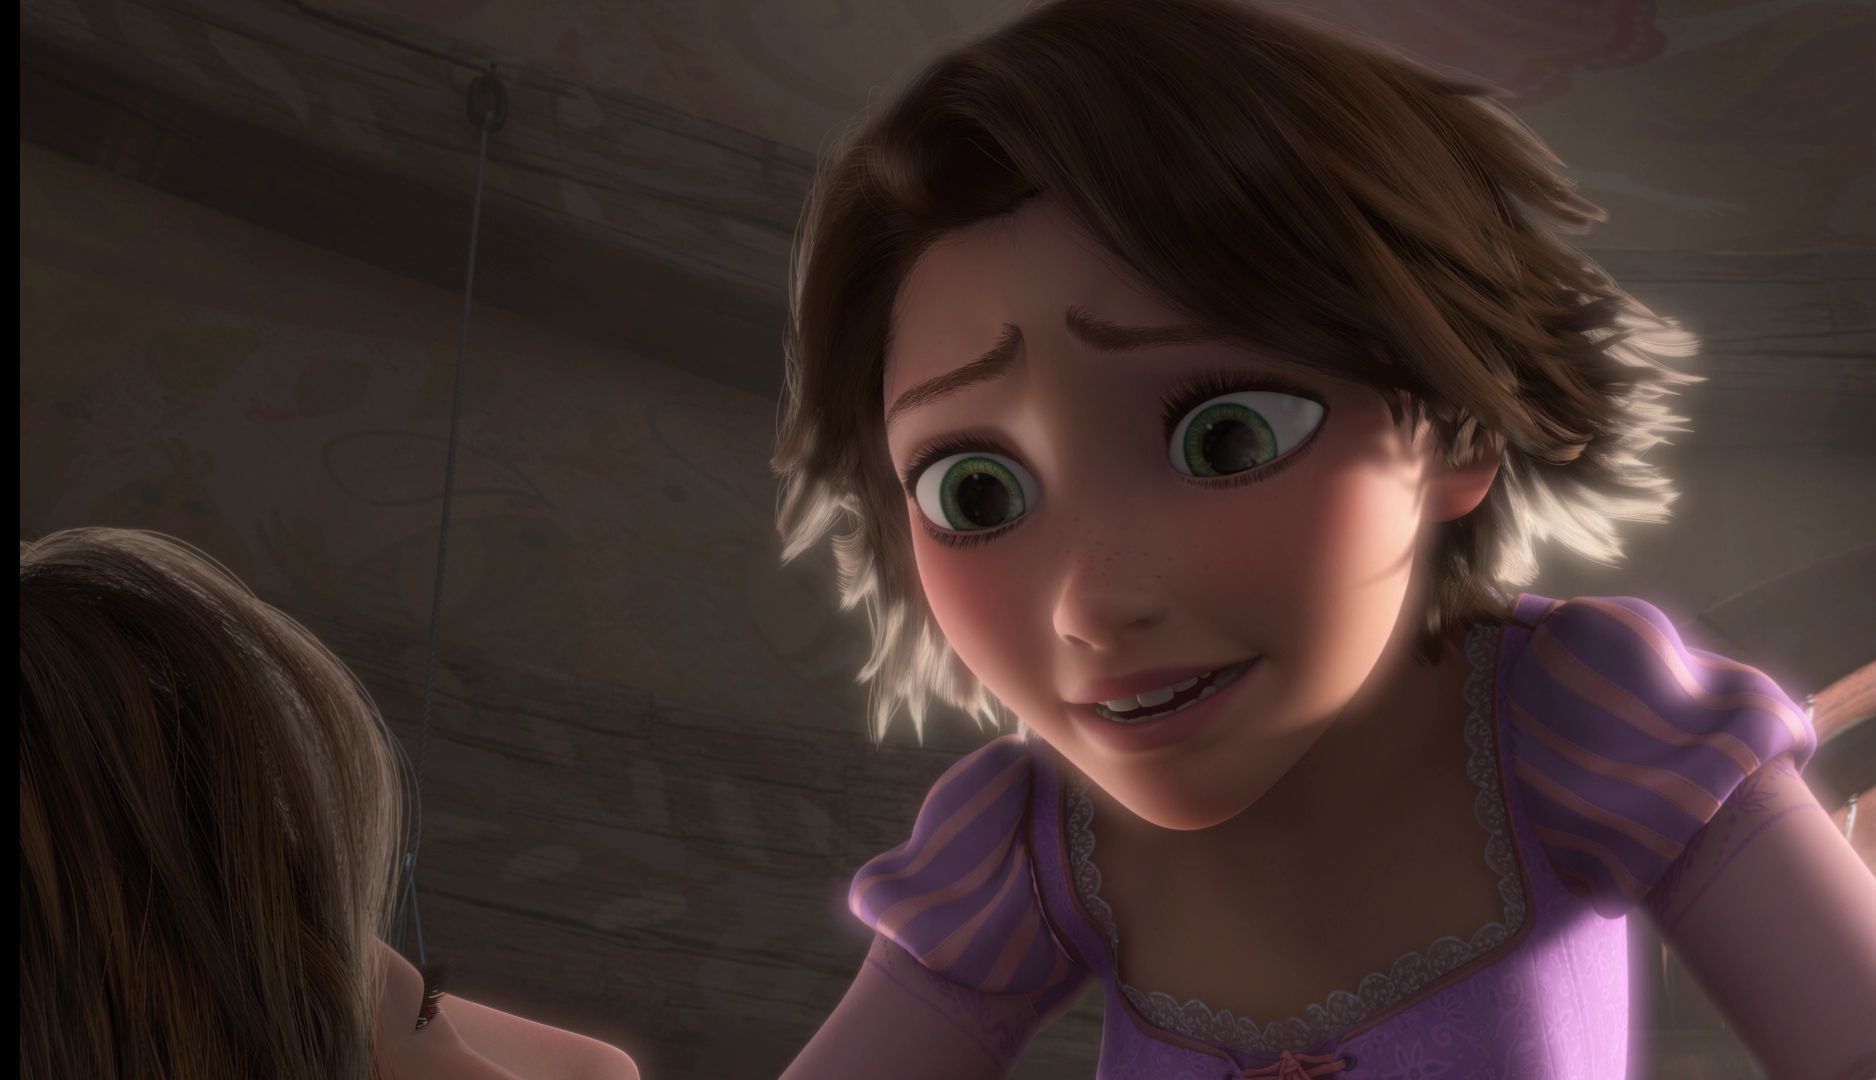 Rapunzel - L'intreccio della torre Image: Tangled: Full Movie Screenca...